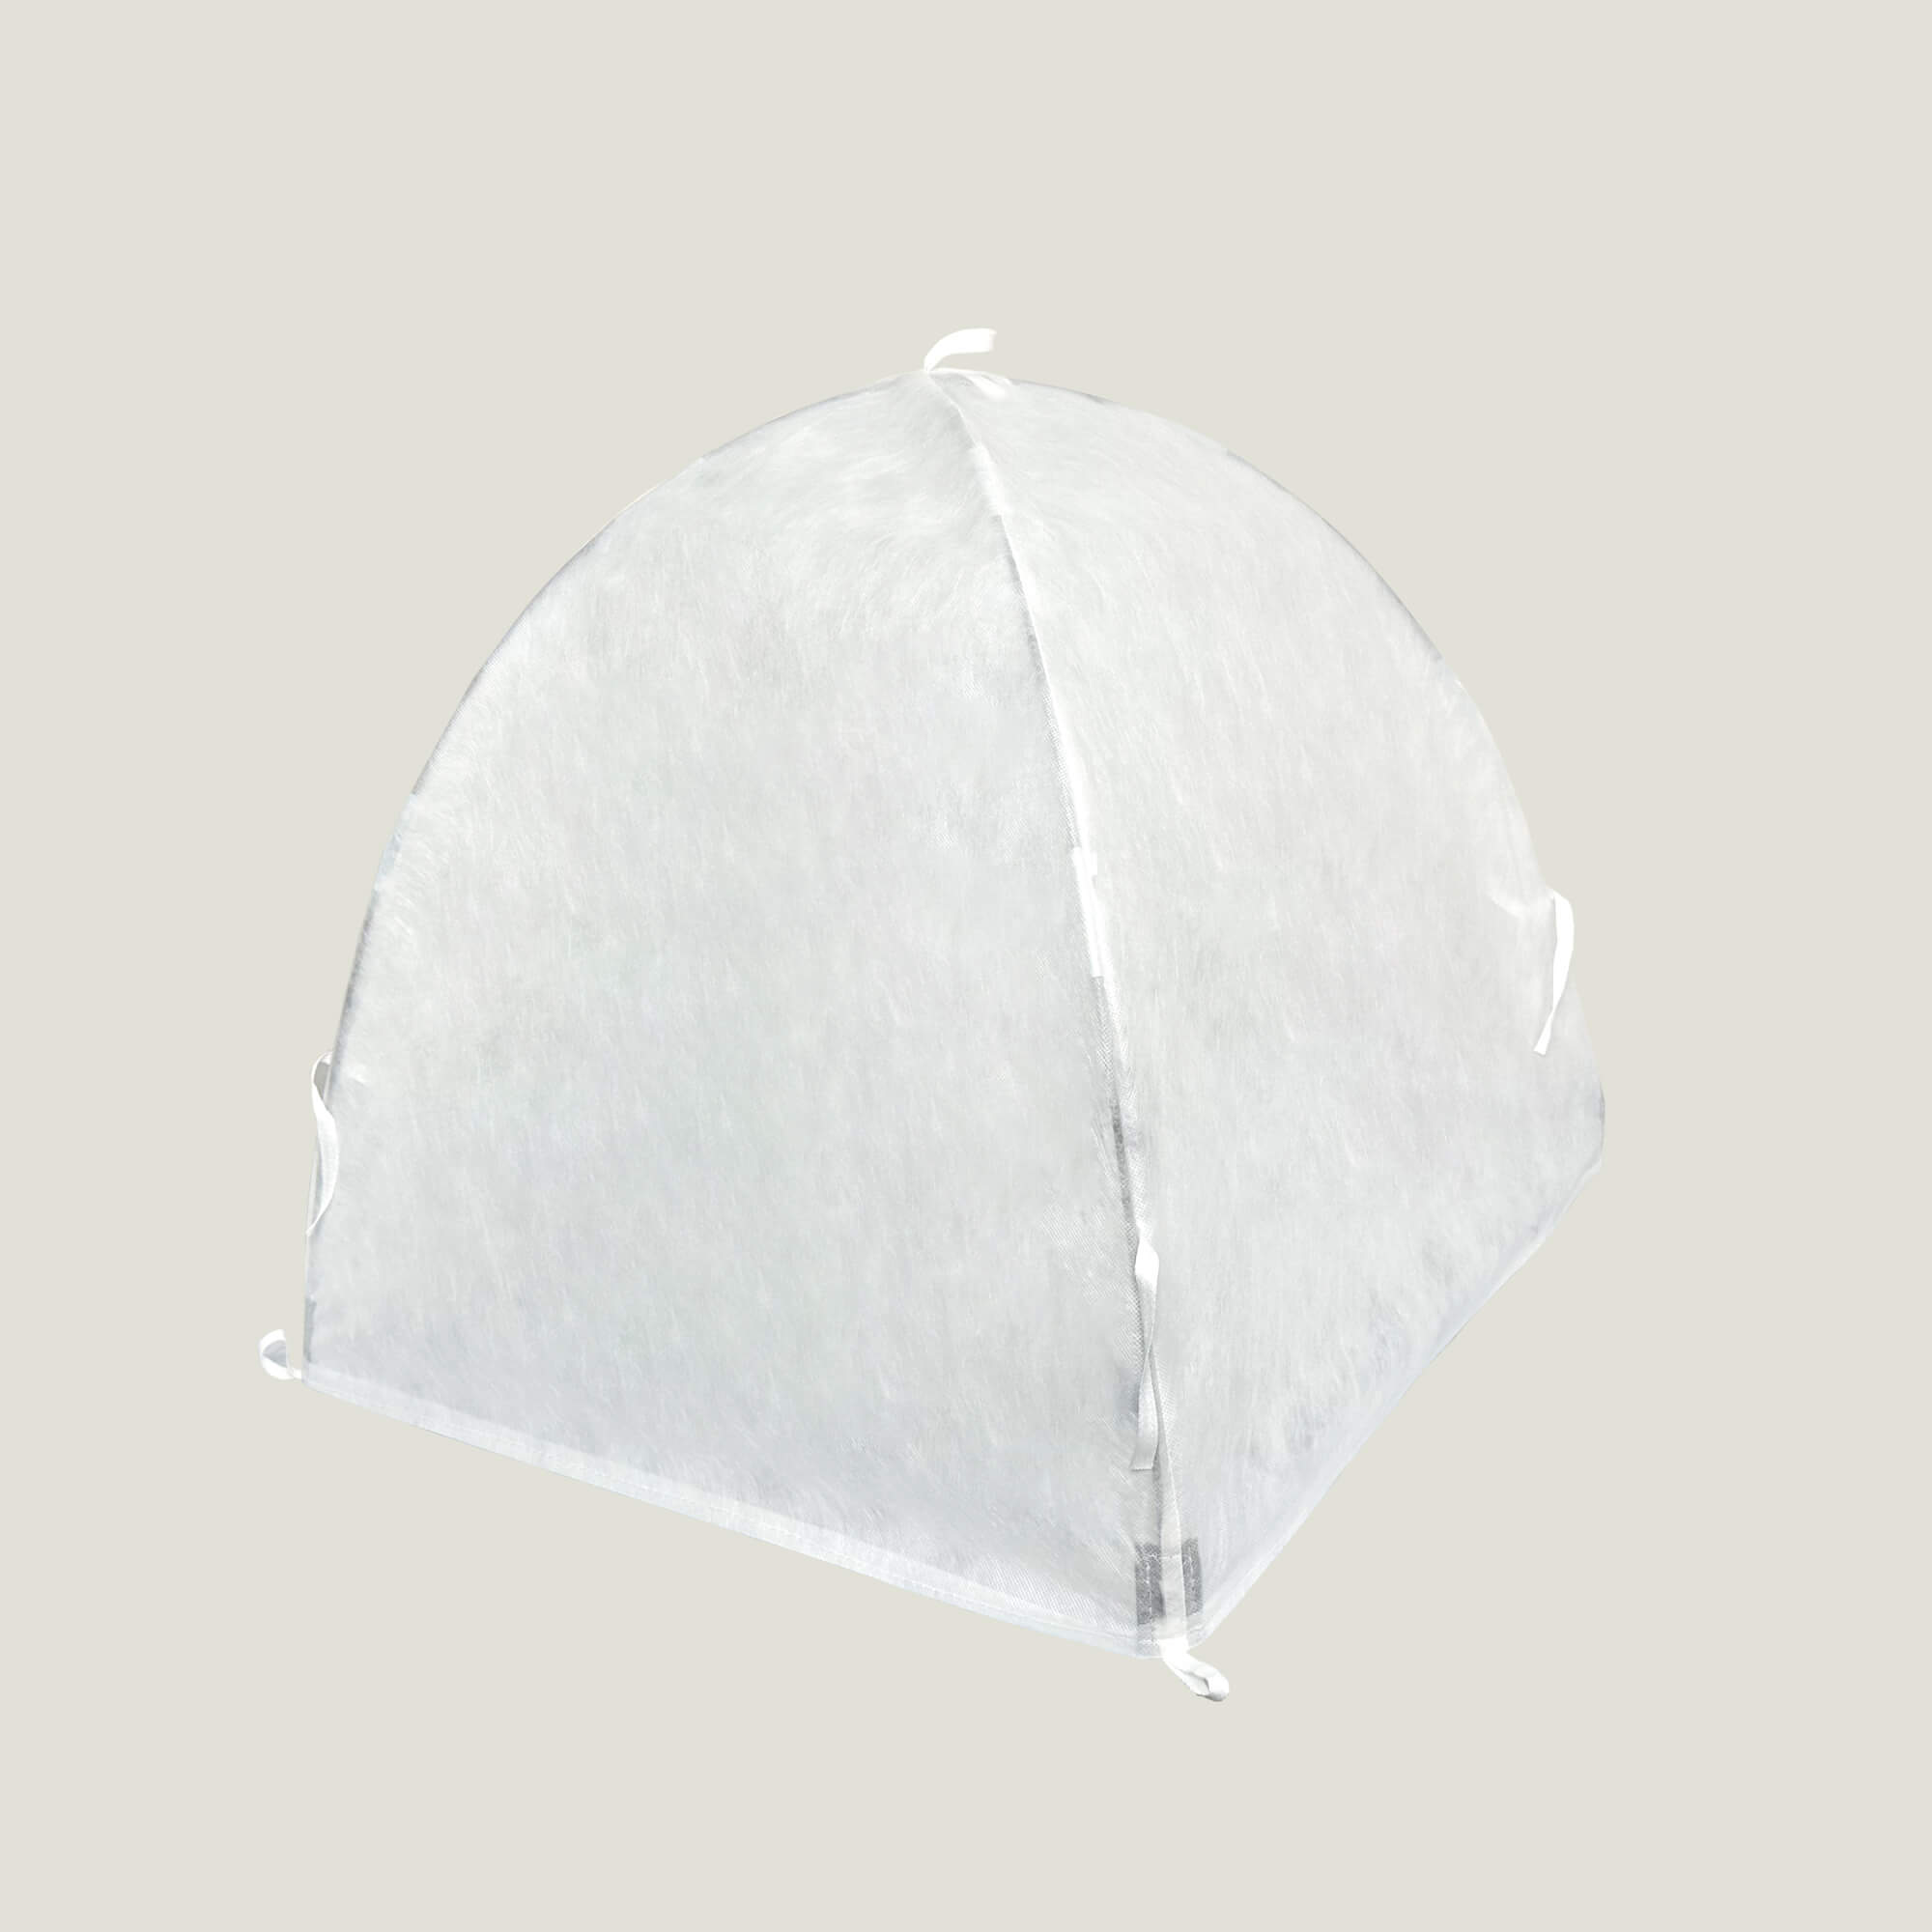 Snowcity Winter Shrub Cover Nonwoven Cloth Biodegradable